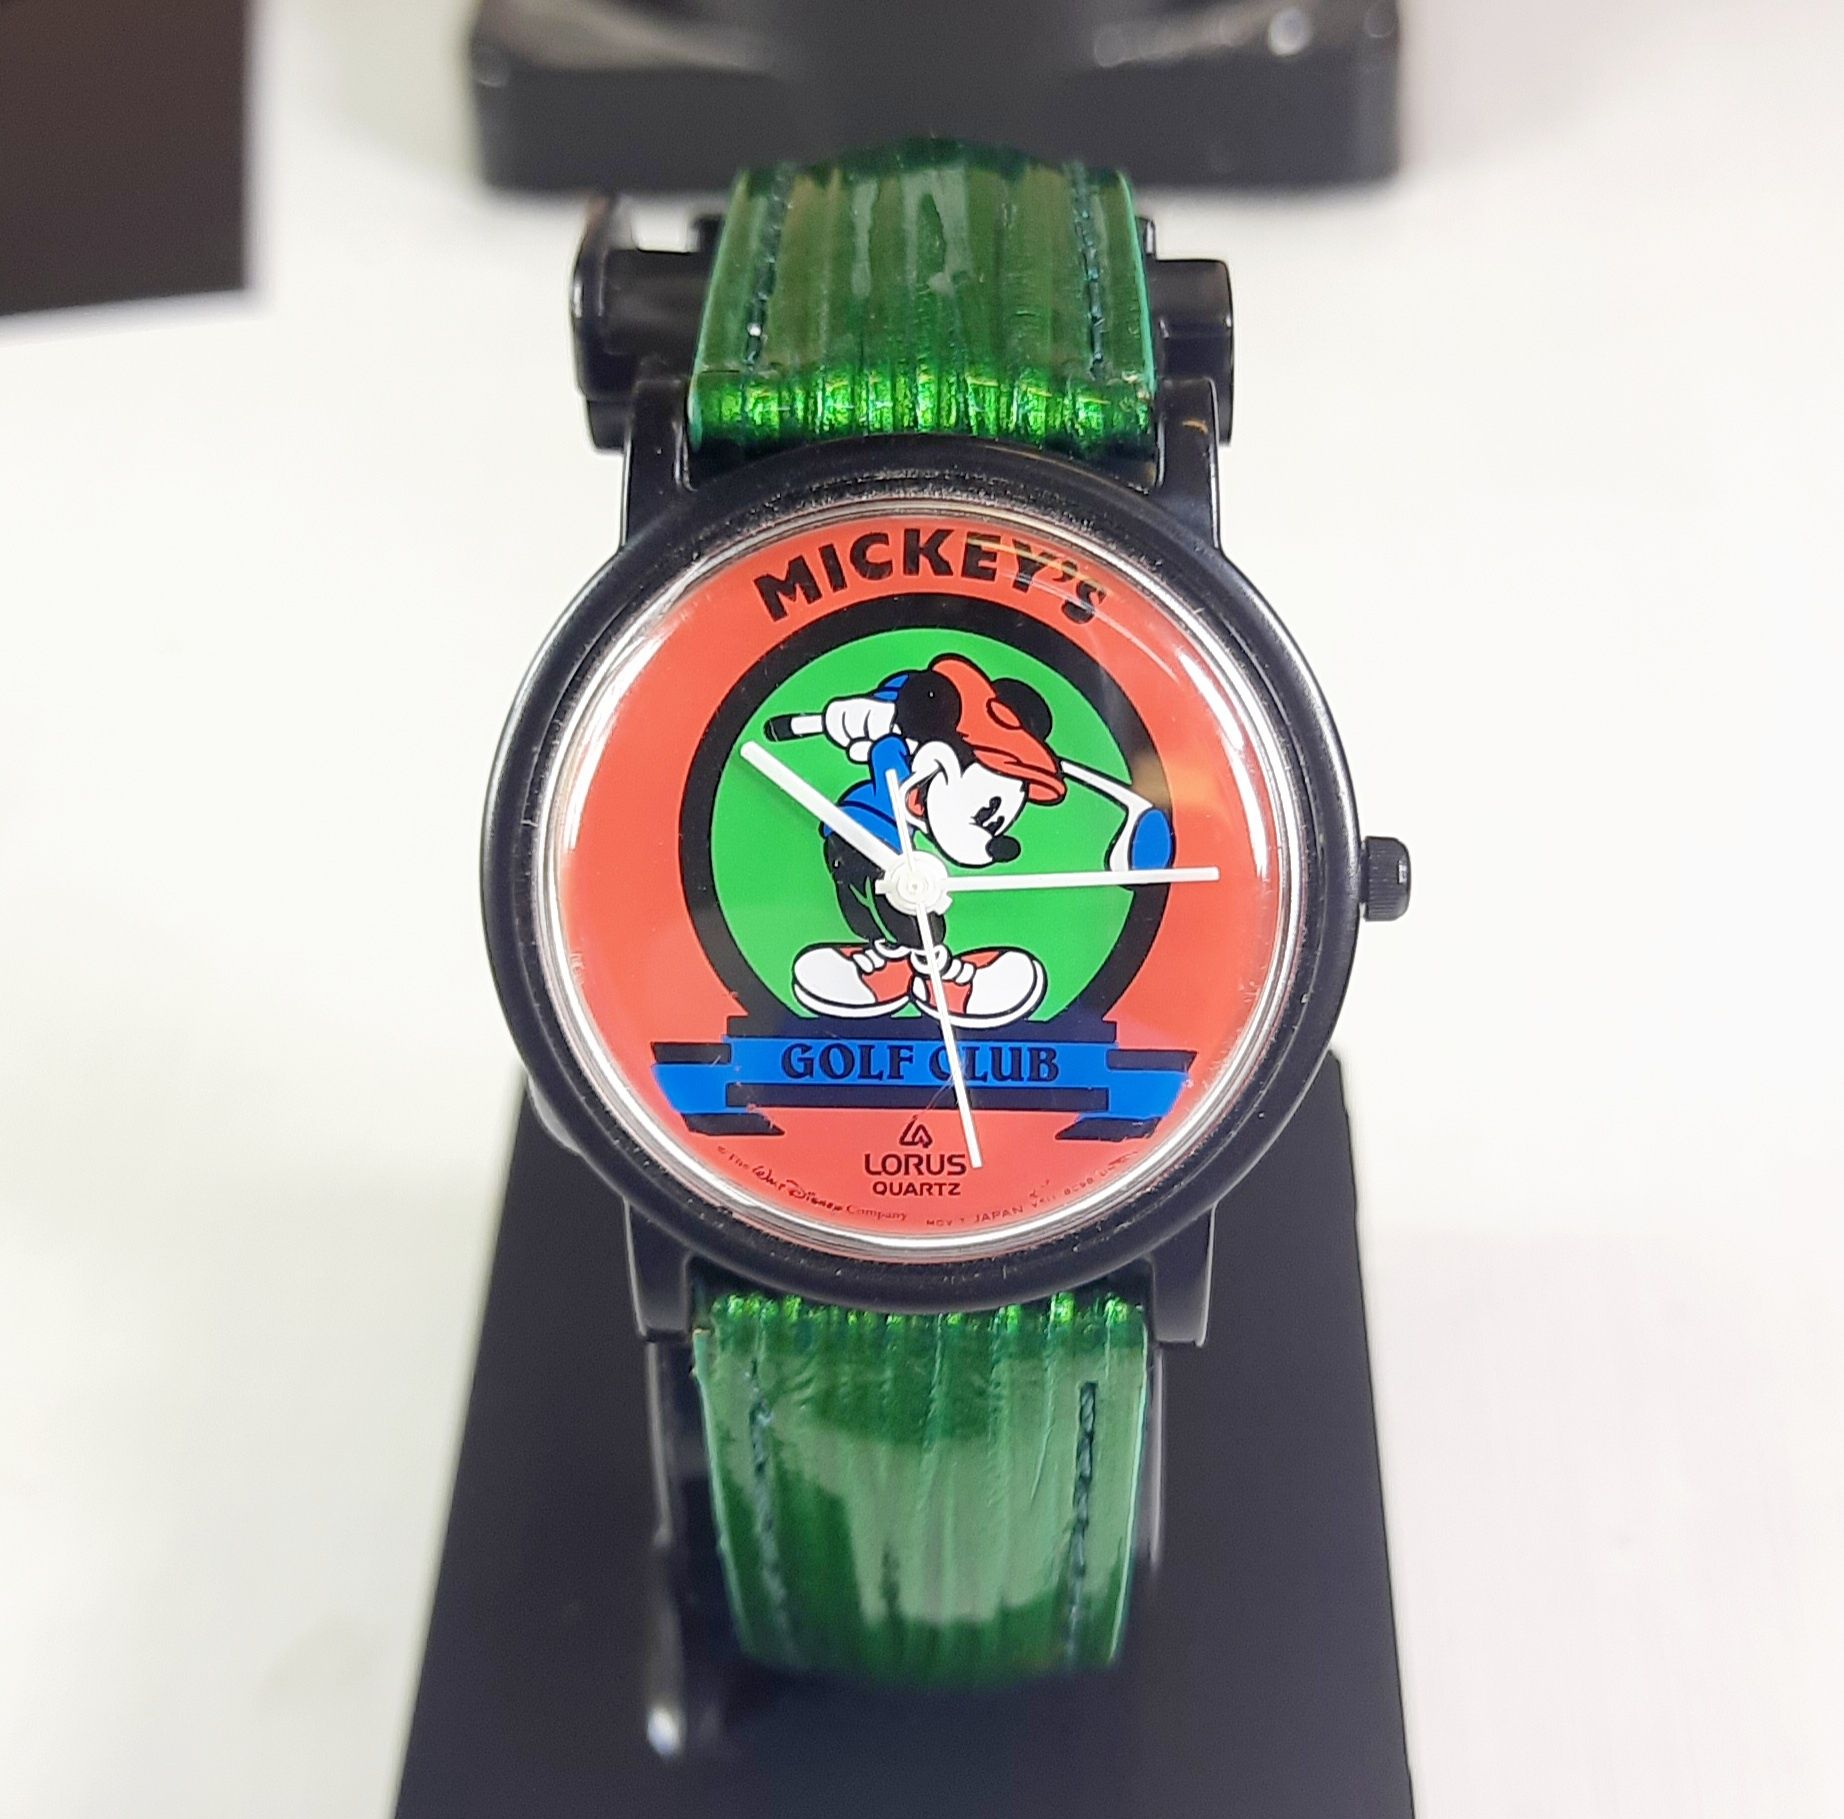 Zamienię zegarek Lorus Mickey Mouse Golf Club na inny zegarek by Seiko